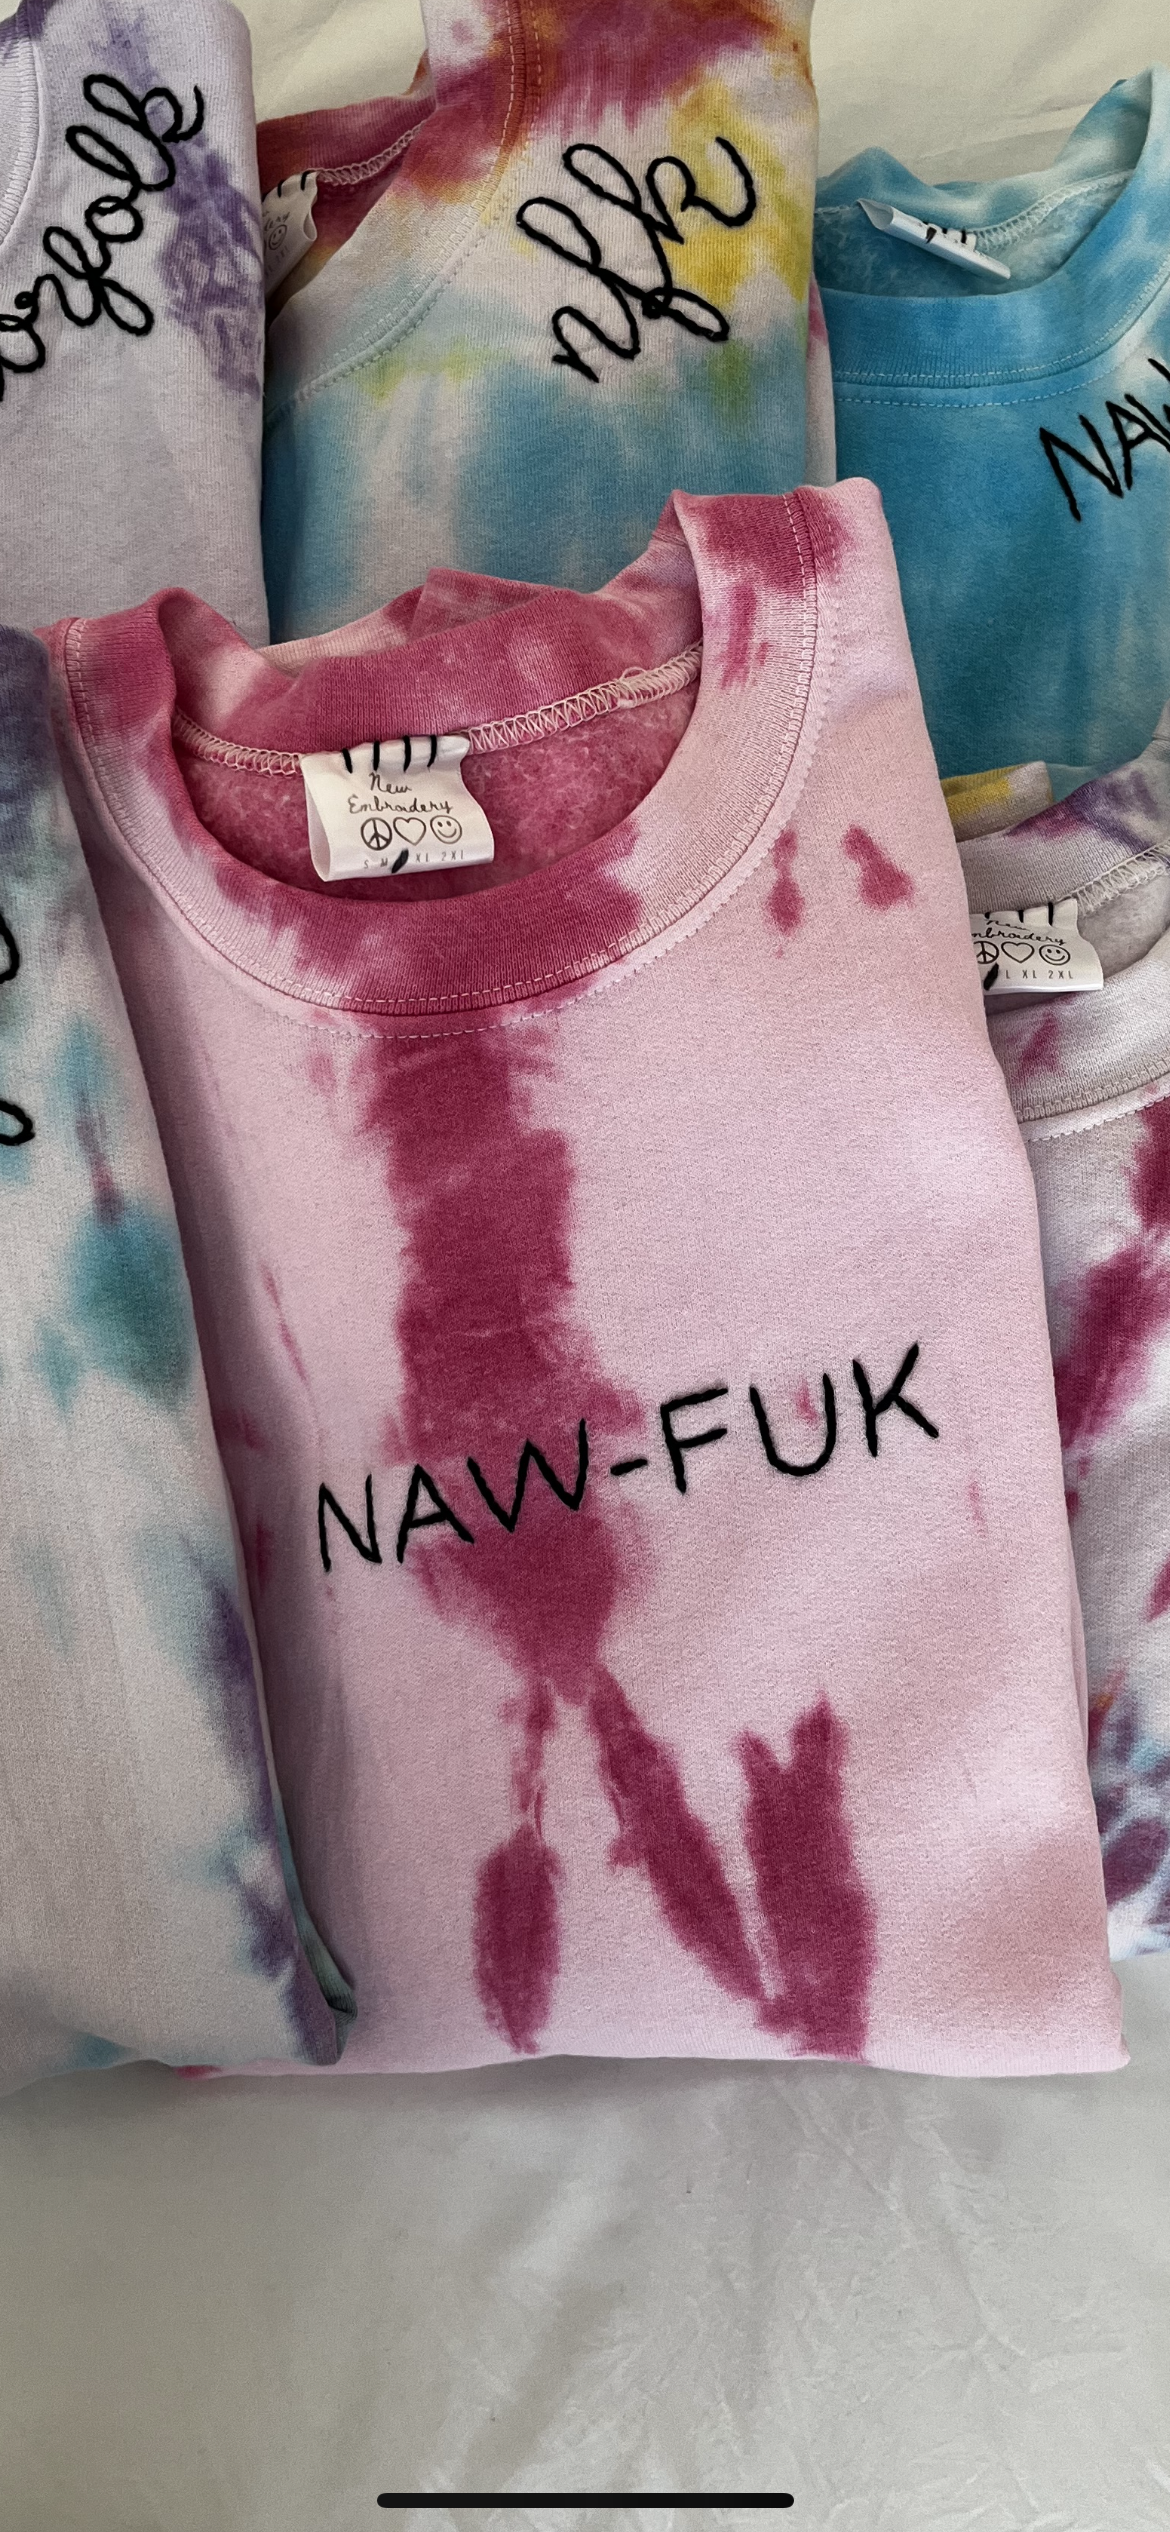 Naw-Fuk Tie Dye T-Shirt